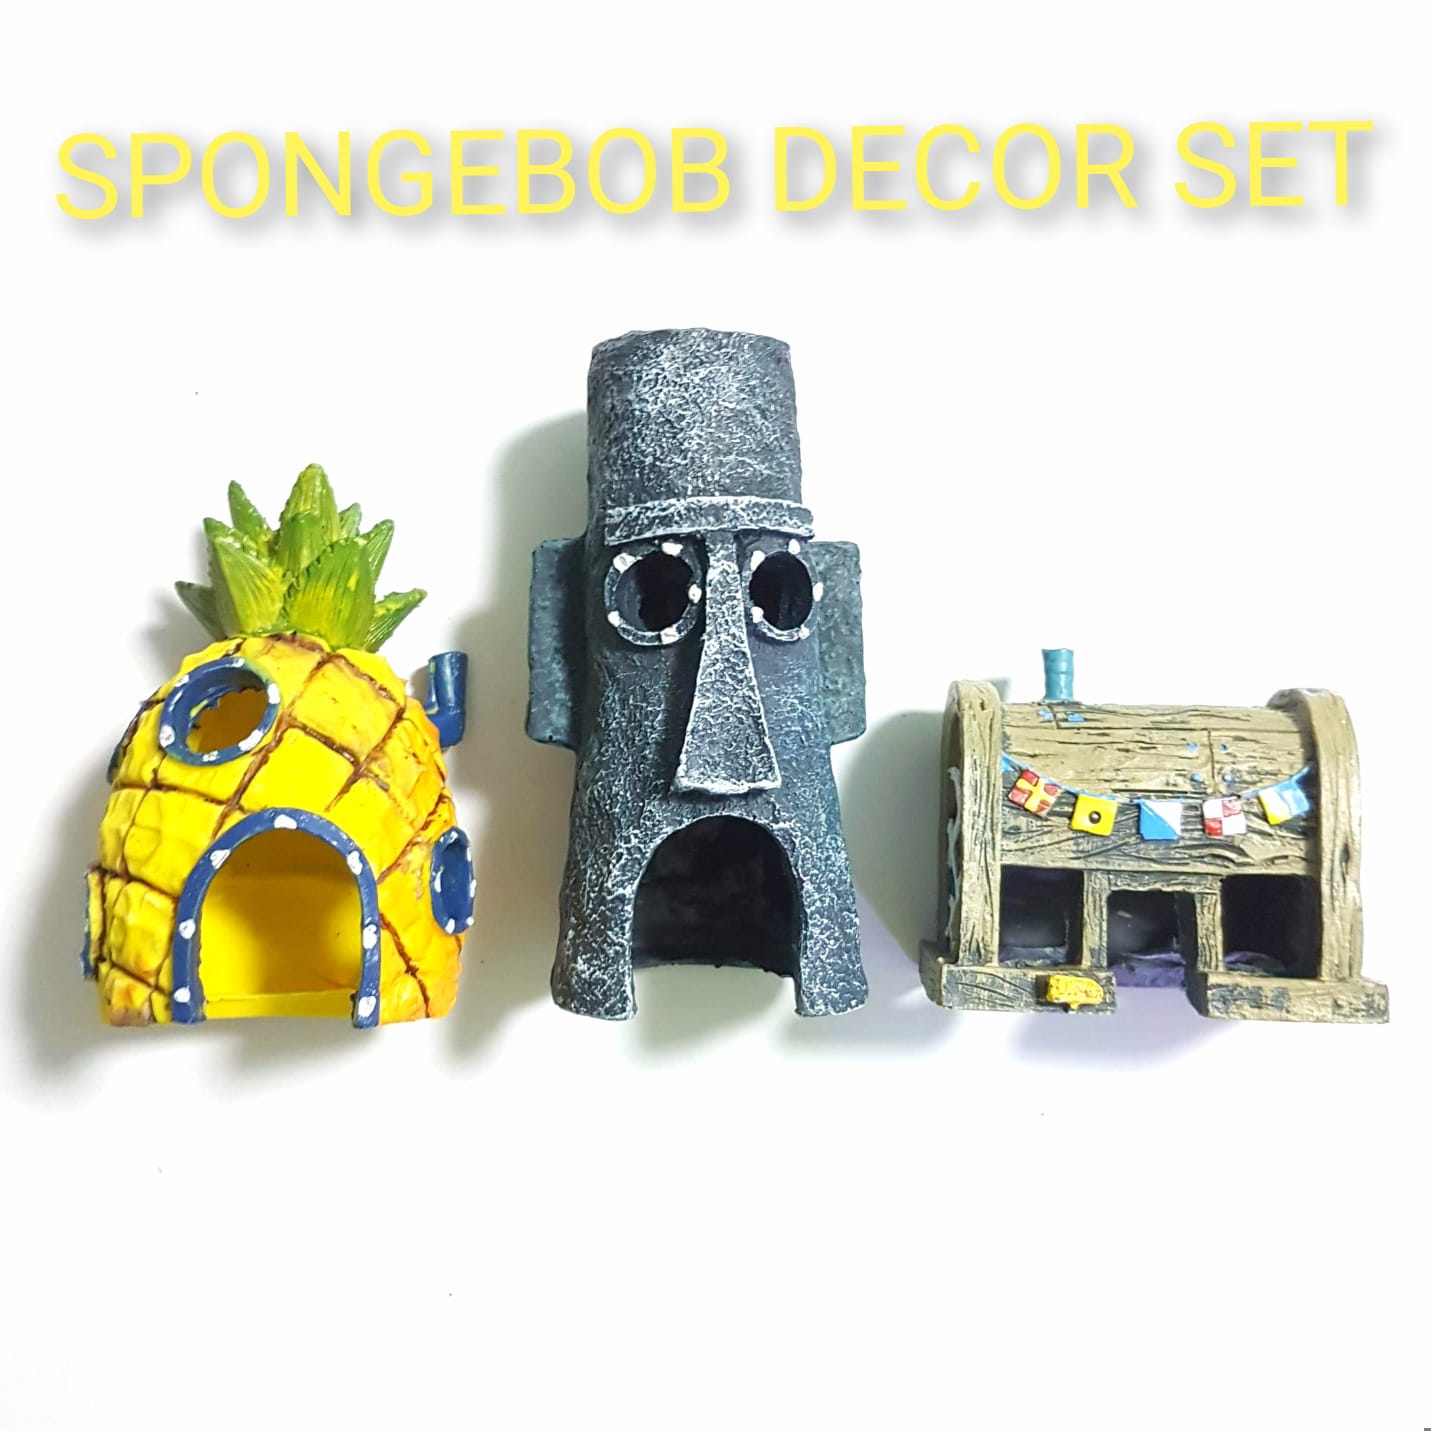 Spongebob Decor Set